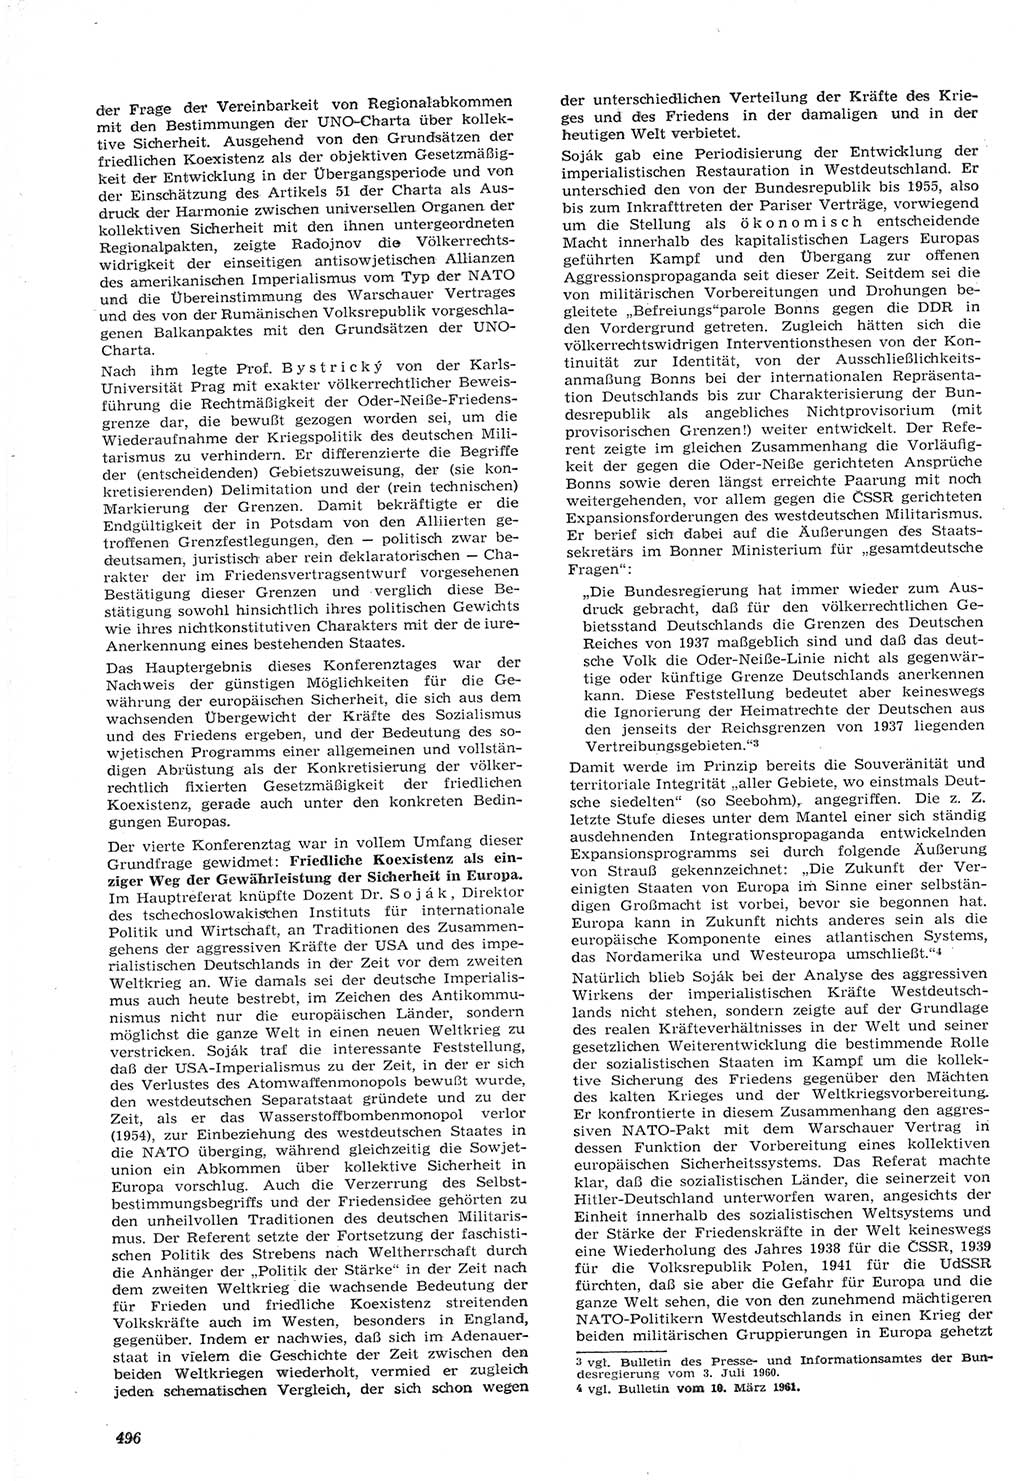 Neue Justiz (NJ), Zeitschrift für Recht und Rechtswissenschaft [Deutsche Demokratische Republik (DDR)], 15. Jahrgang 1961, Seite 496 (NJ DDR 1961, S. 496)